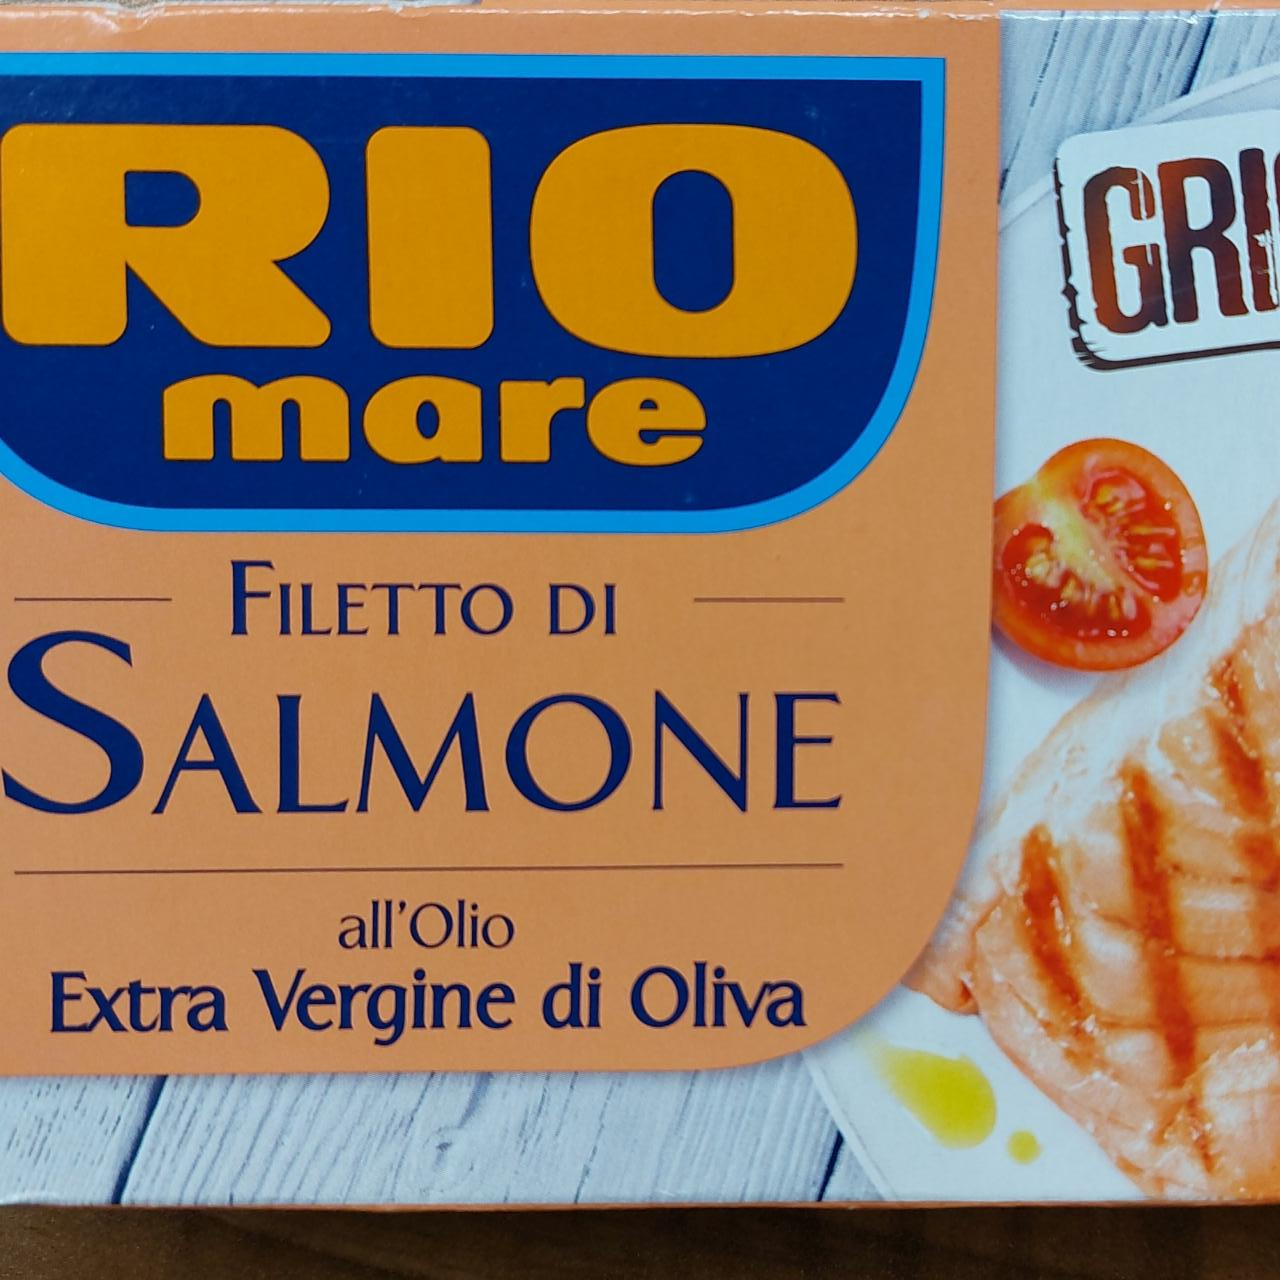 Fotografie - Filetto Di Salmone Extra Vergine di Oliva Rio mare